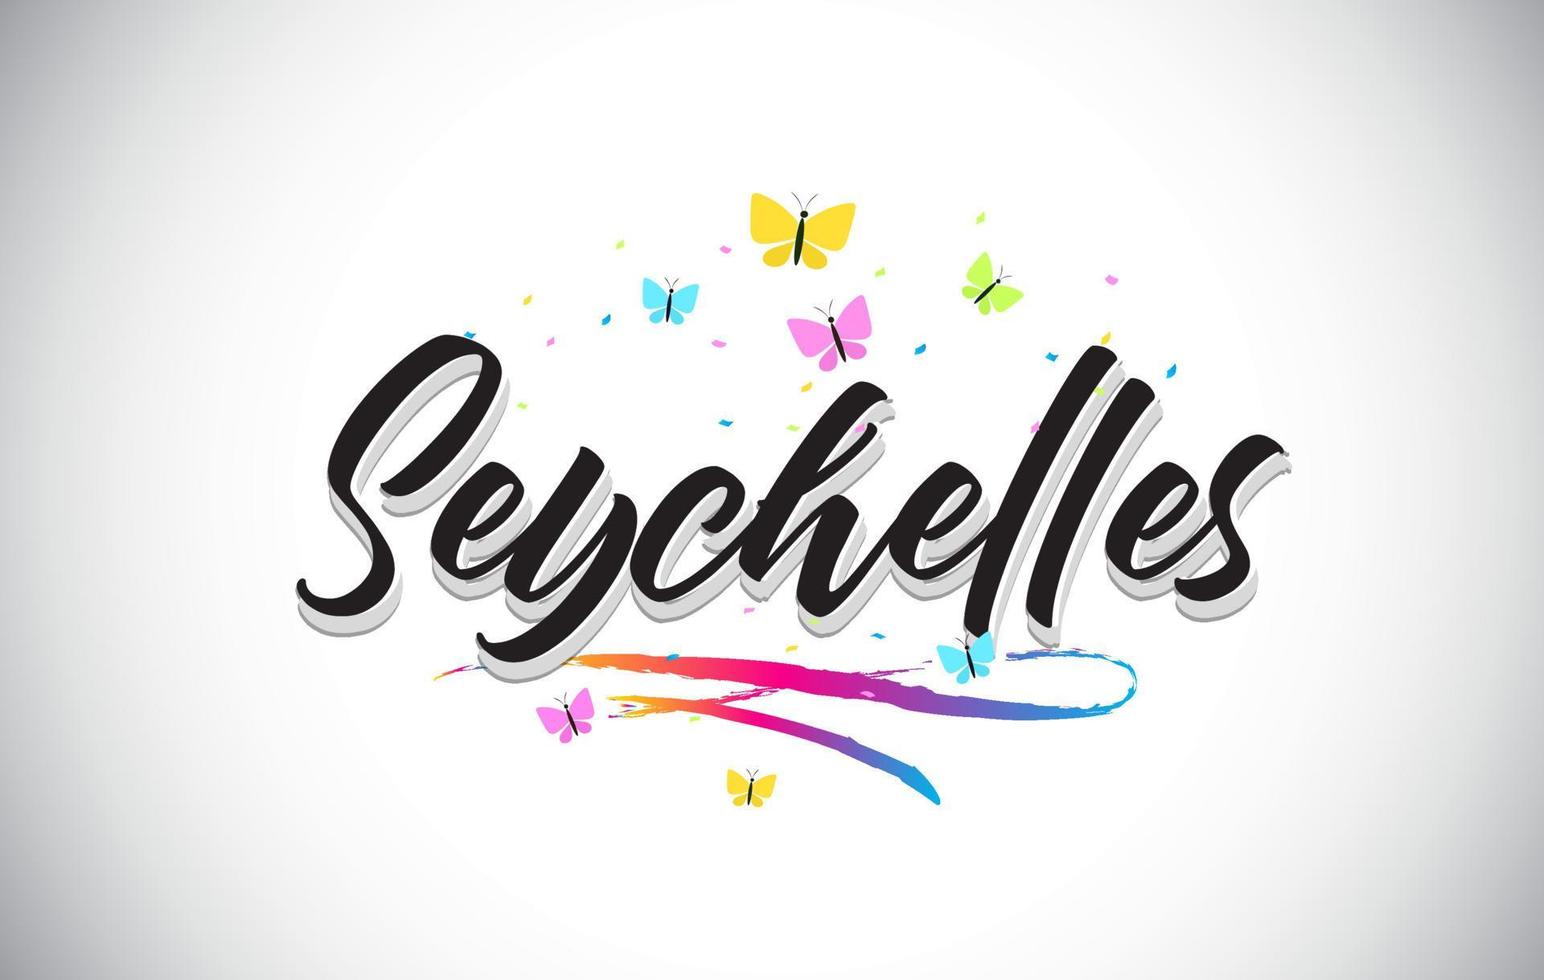 texto de palavra de vetor manuscrito de seychelles com borboletas e swoosh colorido.